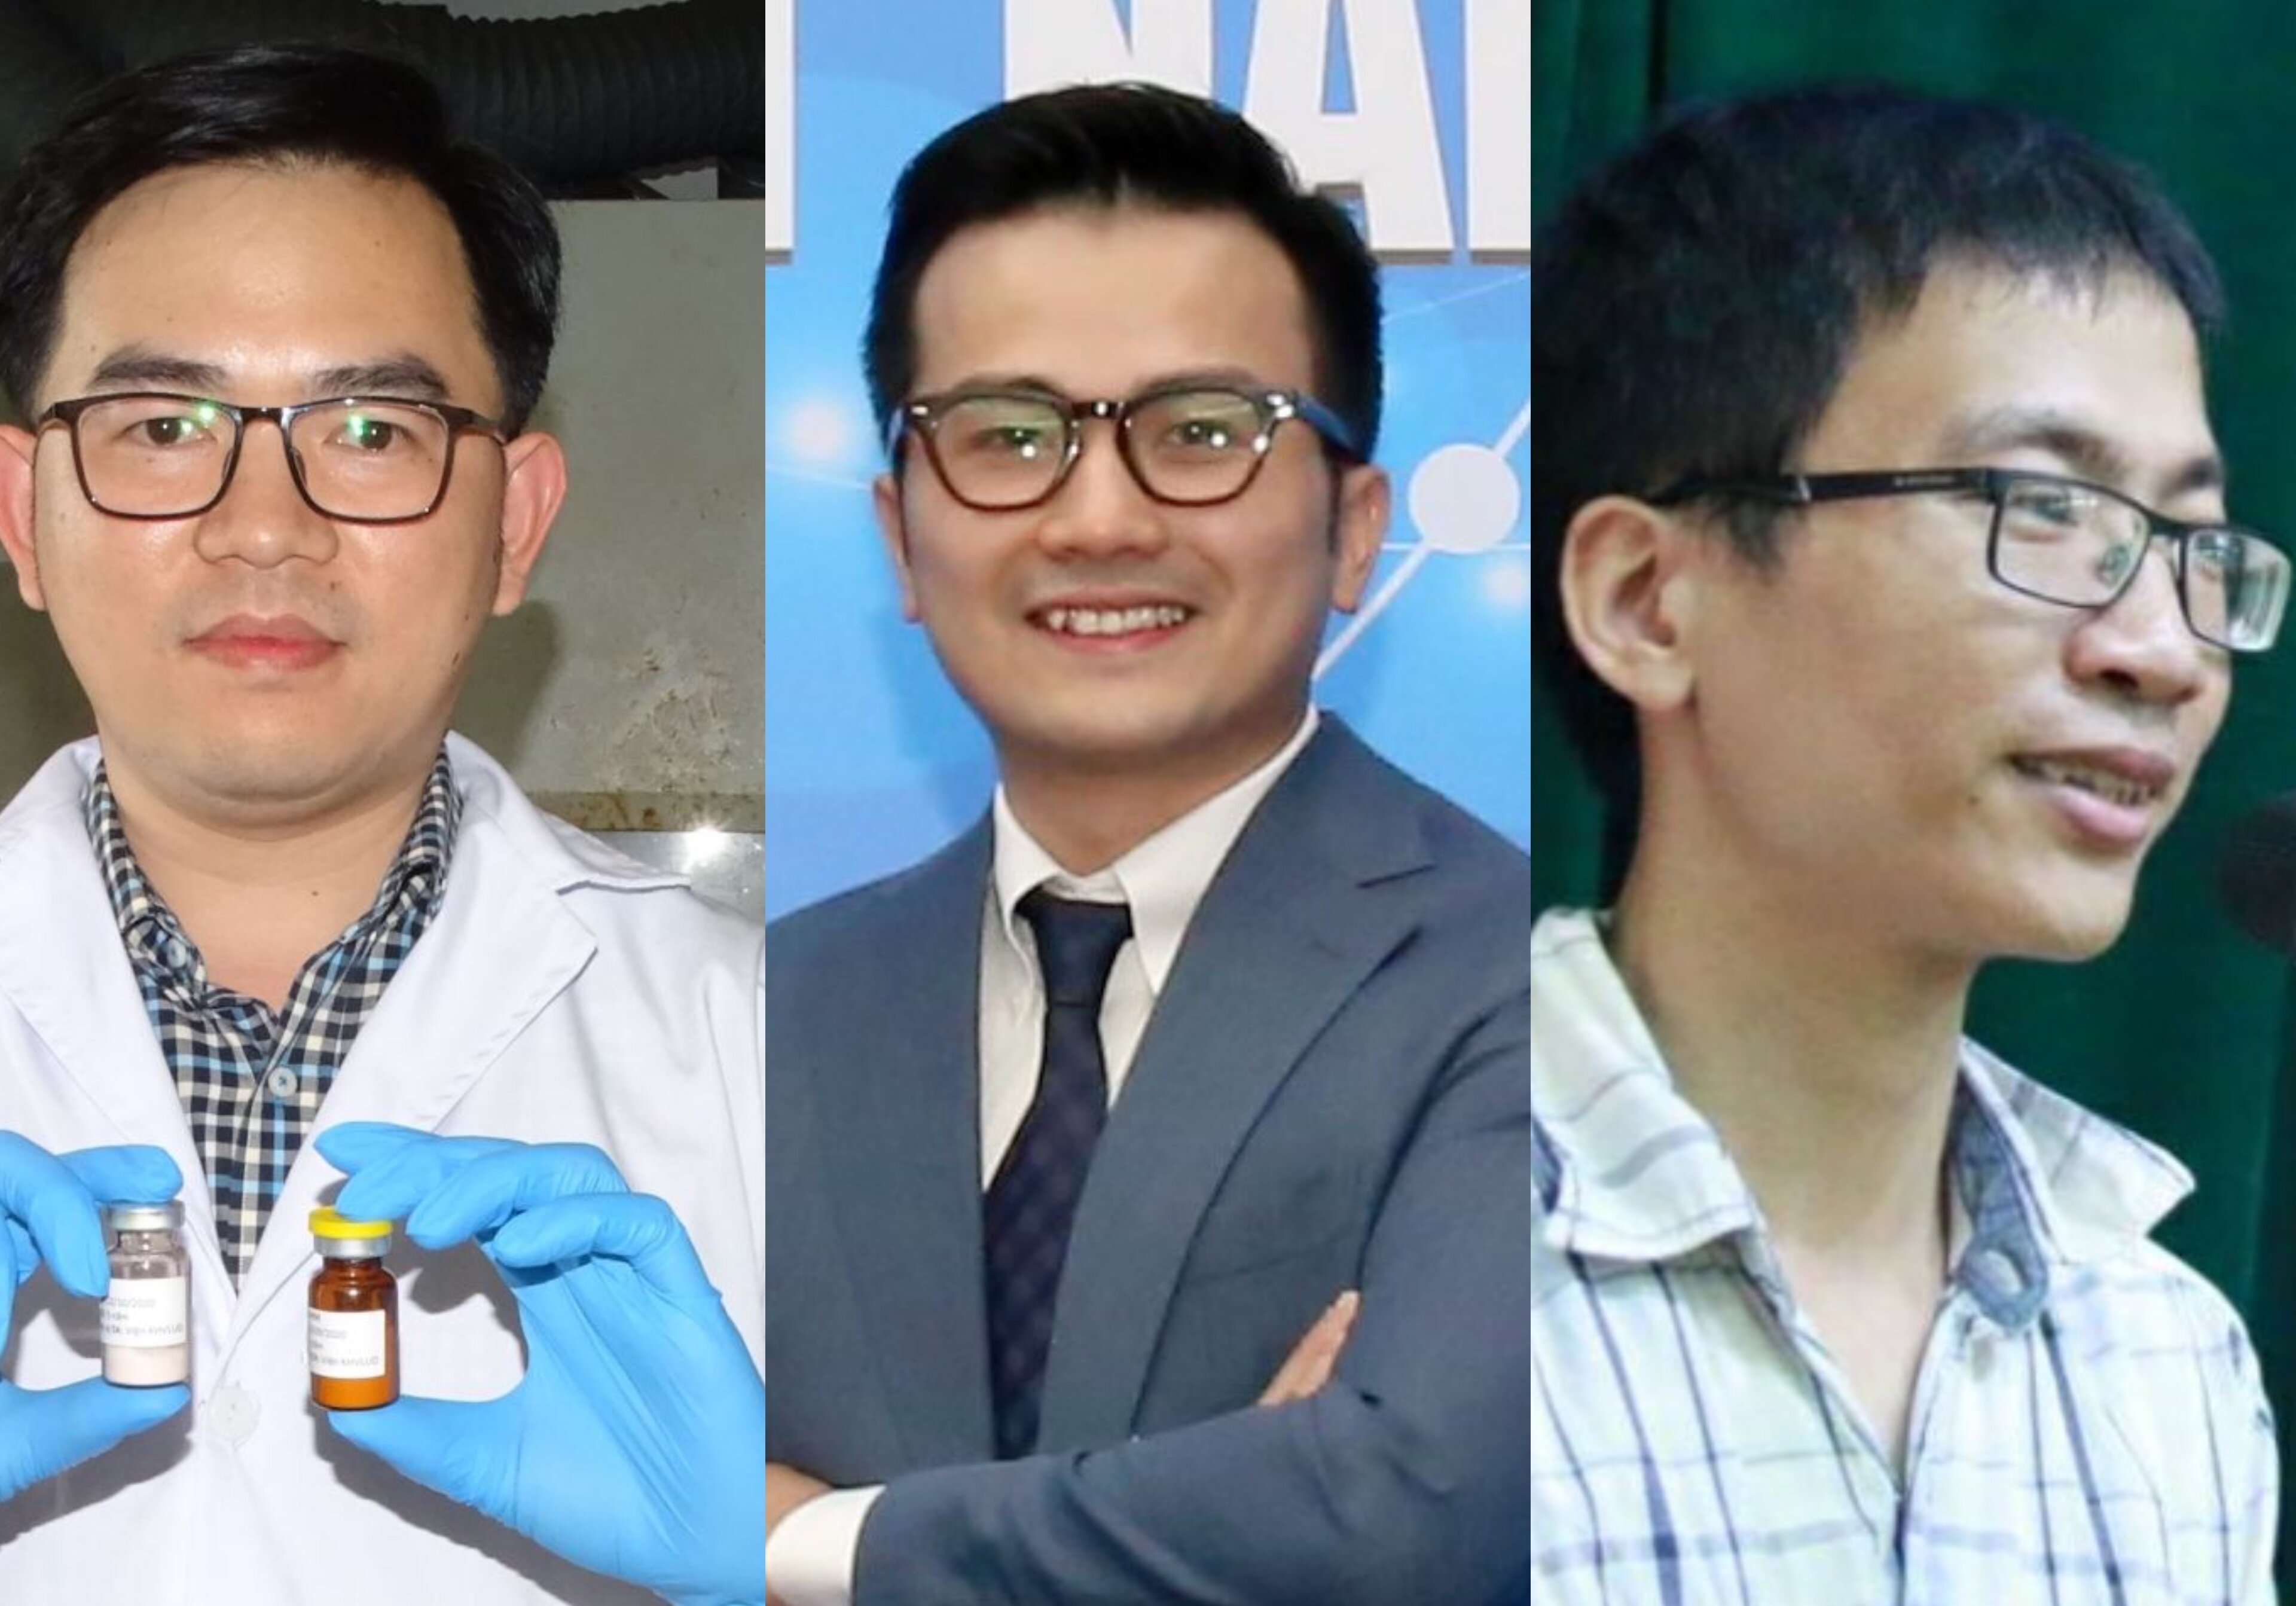 3 ứng viên giáo sư lần lượt từ trái qua phải gồm: Nguyễn Đại Hải, Trần Xuân Bách và Đoàn Thái Sơn.